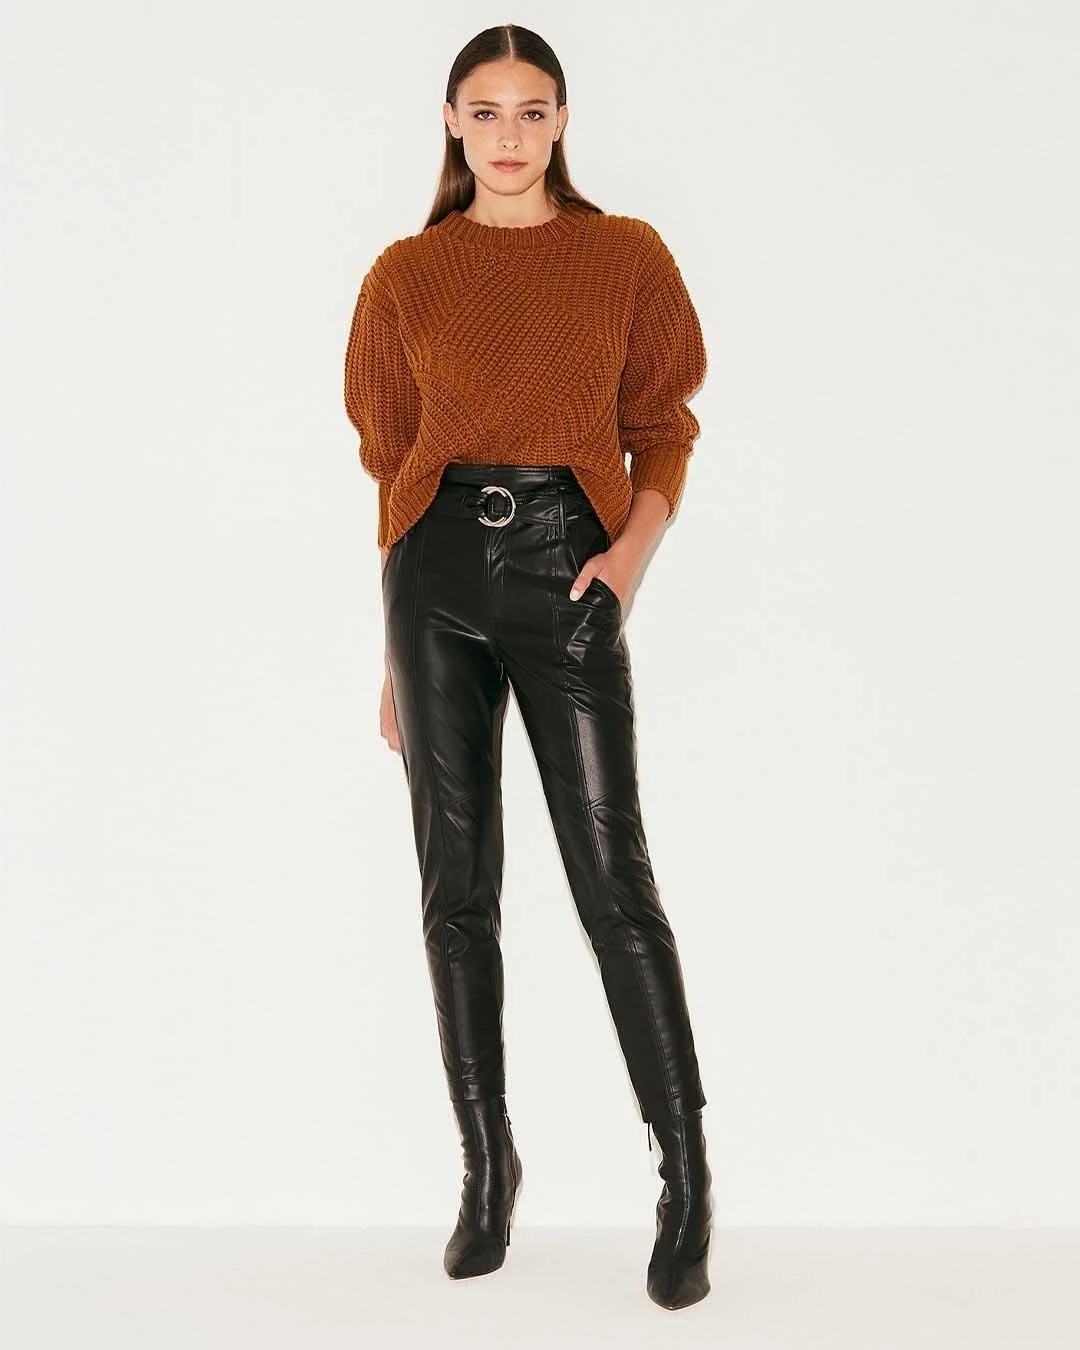 pantalones de cuero invierno 2021 moda mujer